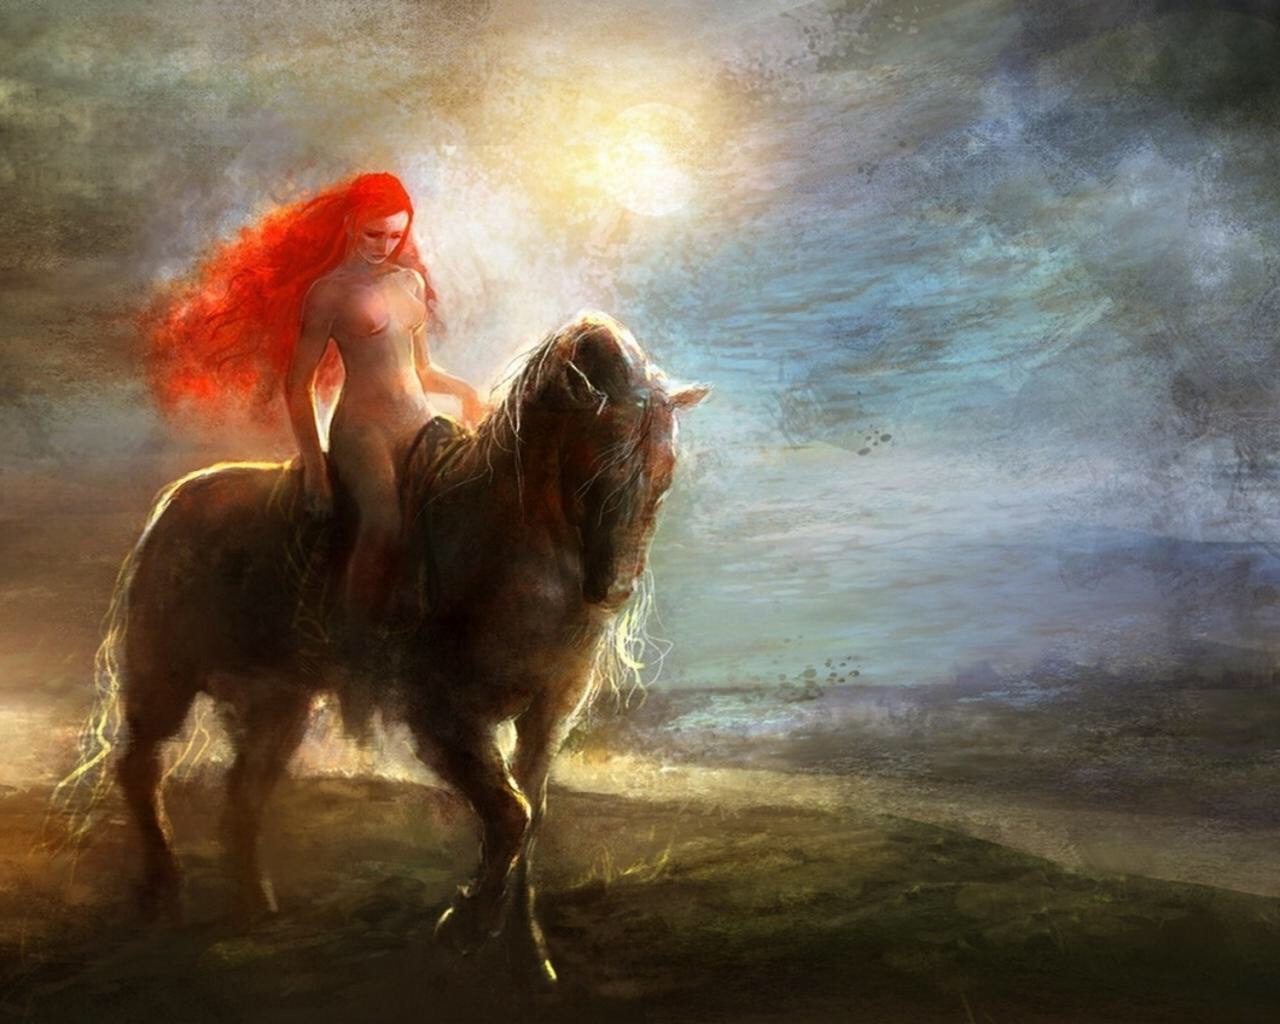 Сексуальная принцесса взобралась на коня - порно фото